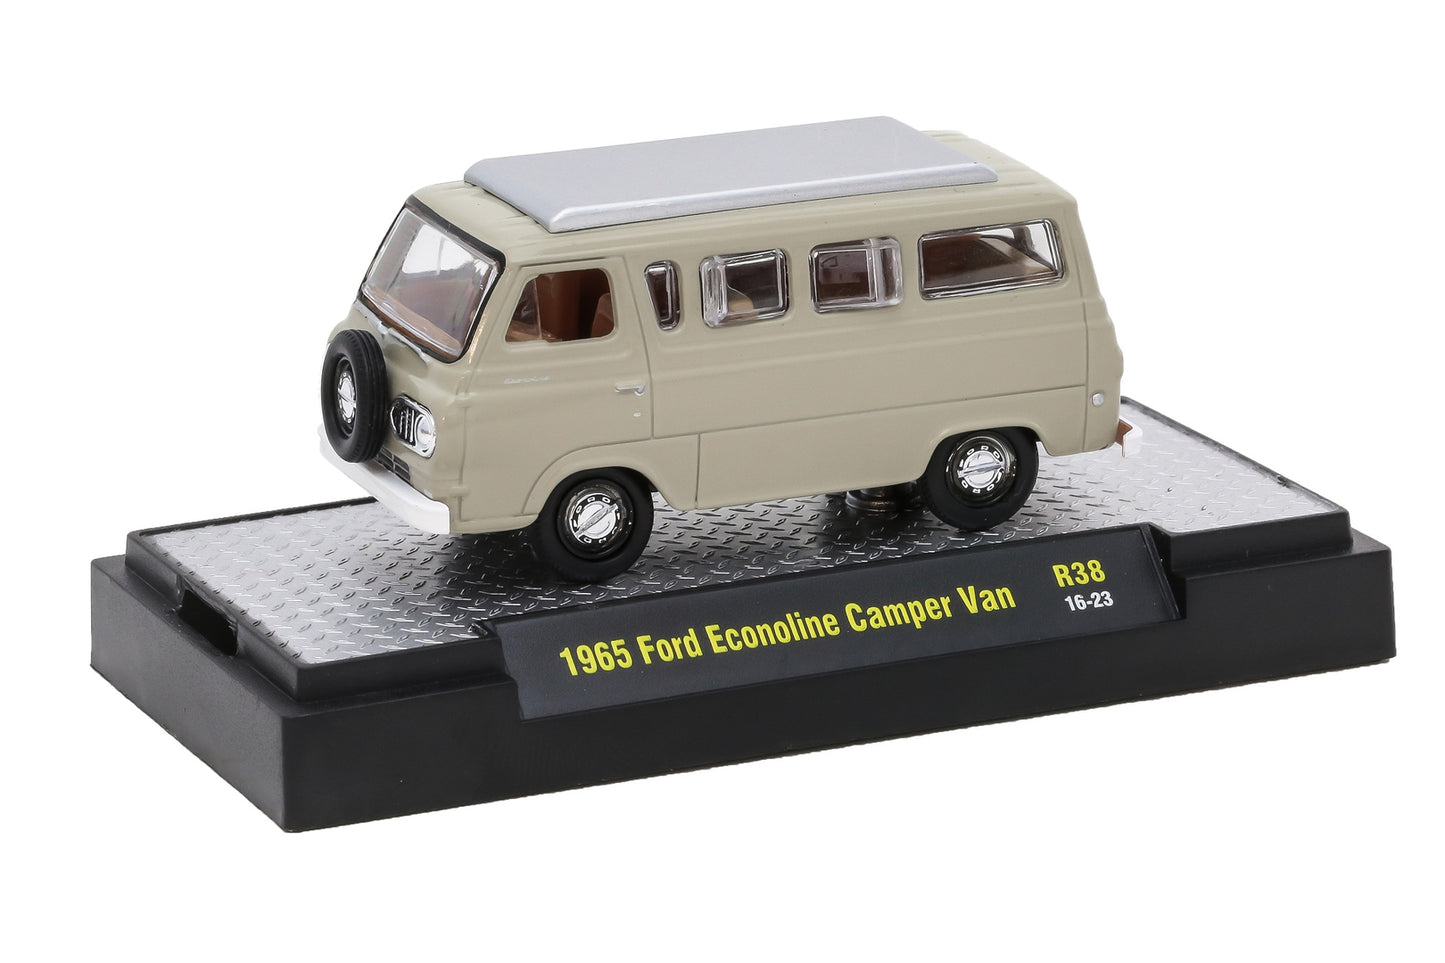 Release 38 - 1965 Ford Econoline Camper Van Die Cast Model